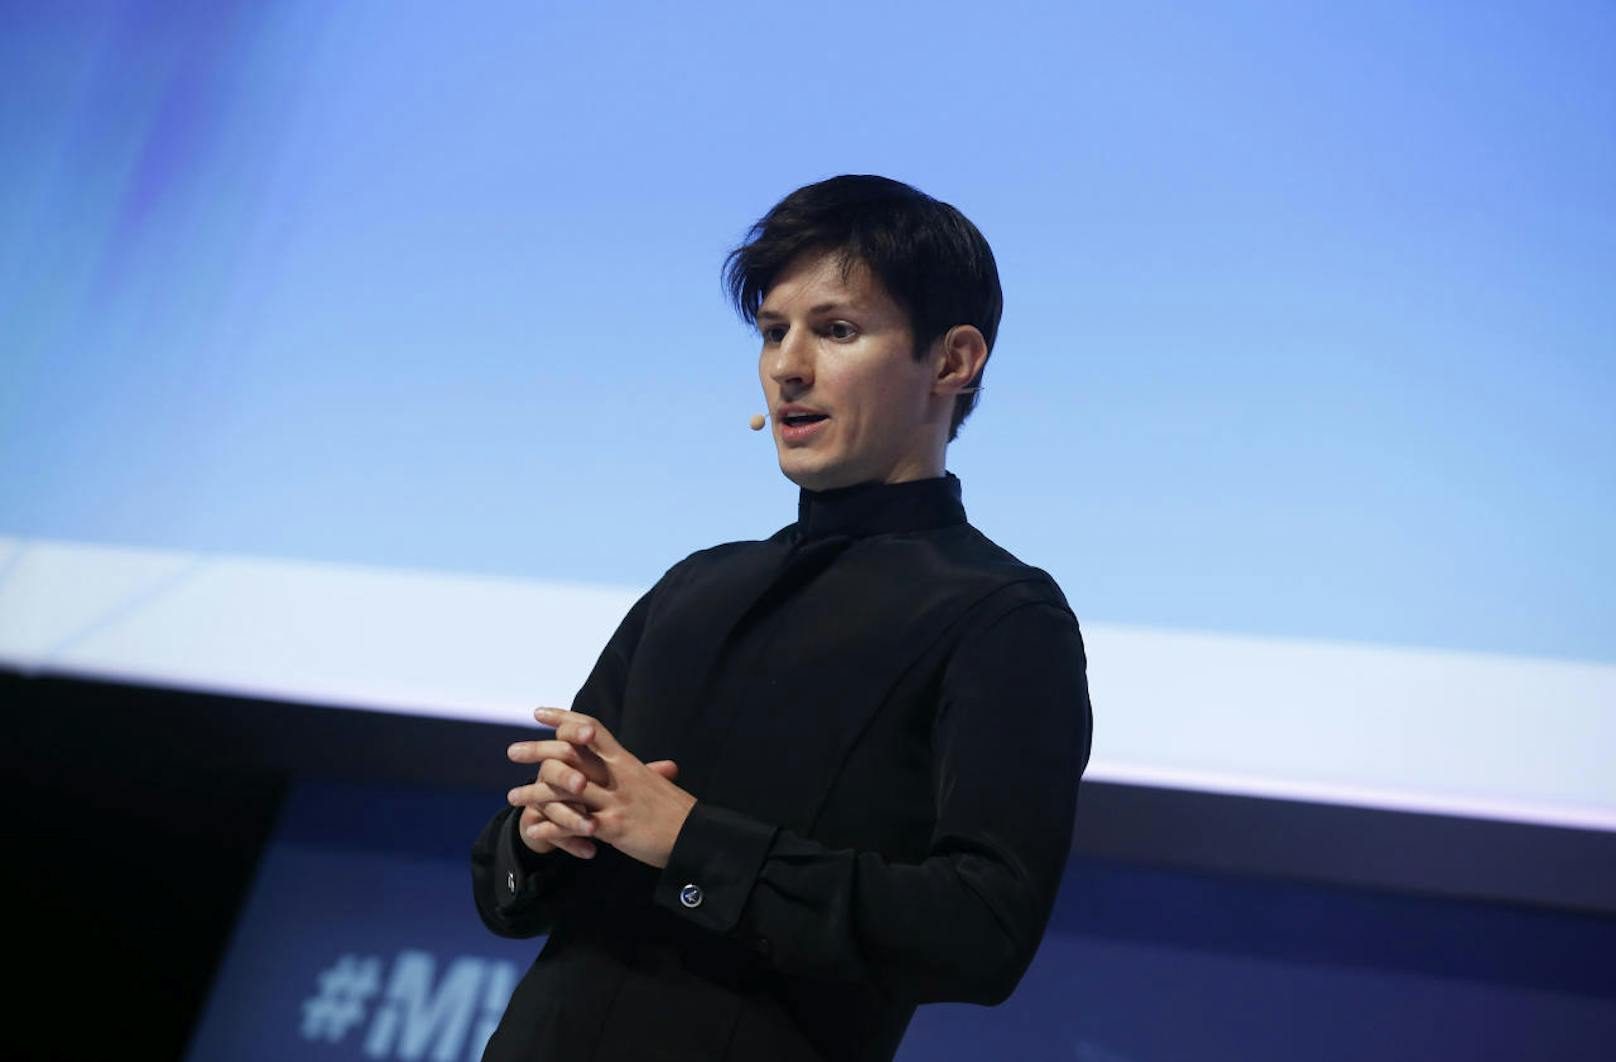 Telegram umgeht die Sperre nun einfach. Telegram-Gründer Pawel Durow hat deutliche Worte: "Die Privatsphäre ist nicht zu verkaufen, und Menschenrechte dürfen nicht aus Angst oder Gier kompromittiert werden."